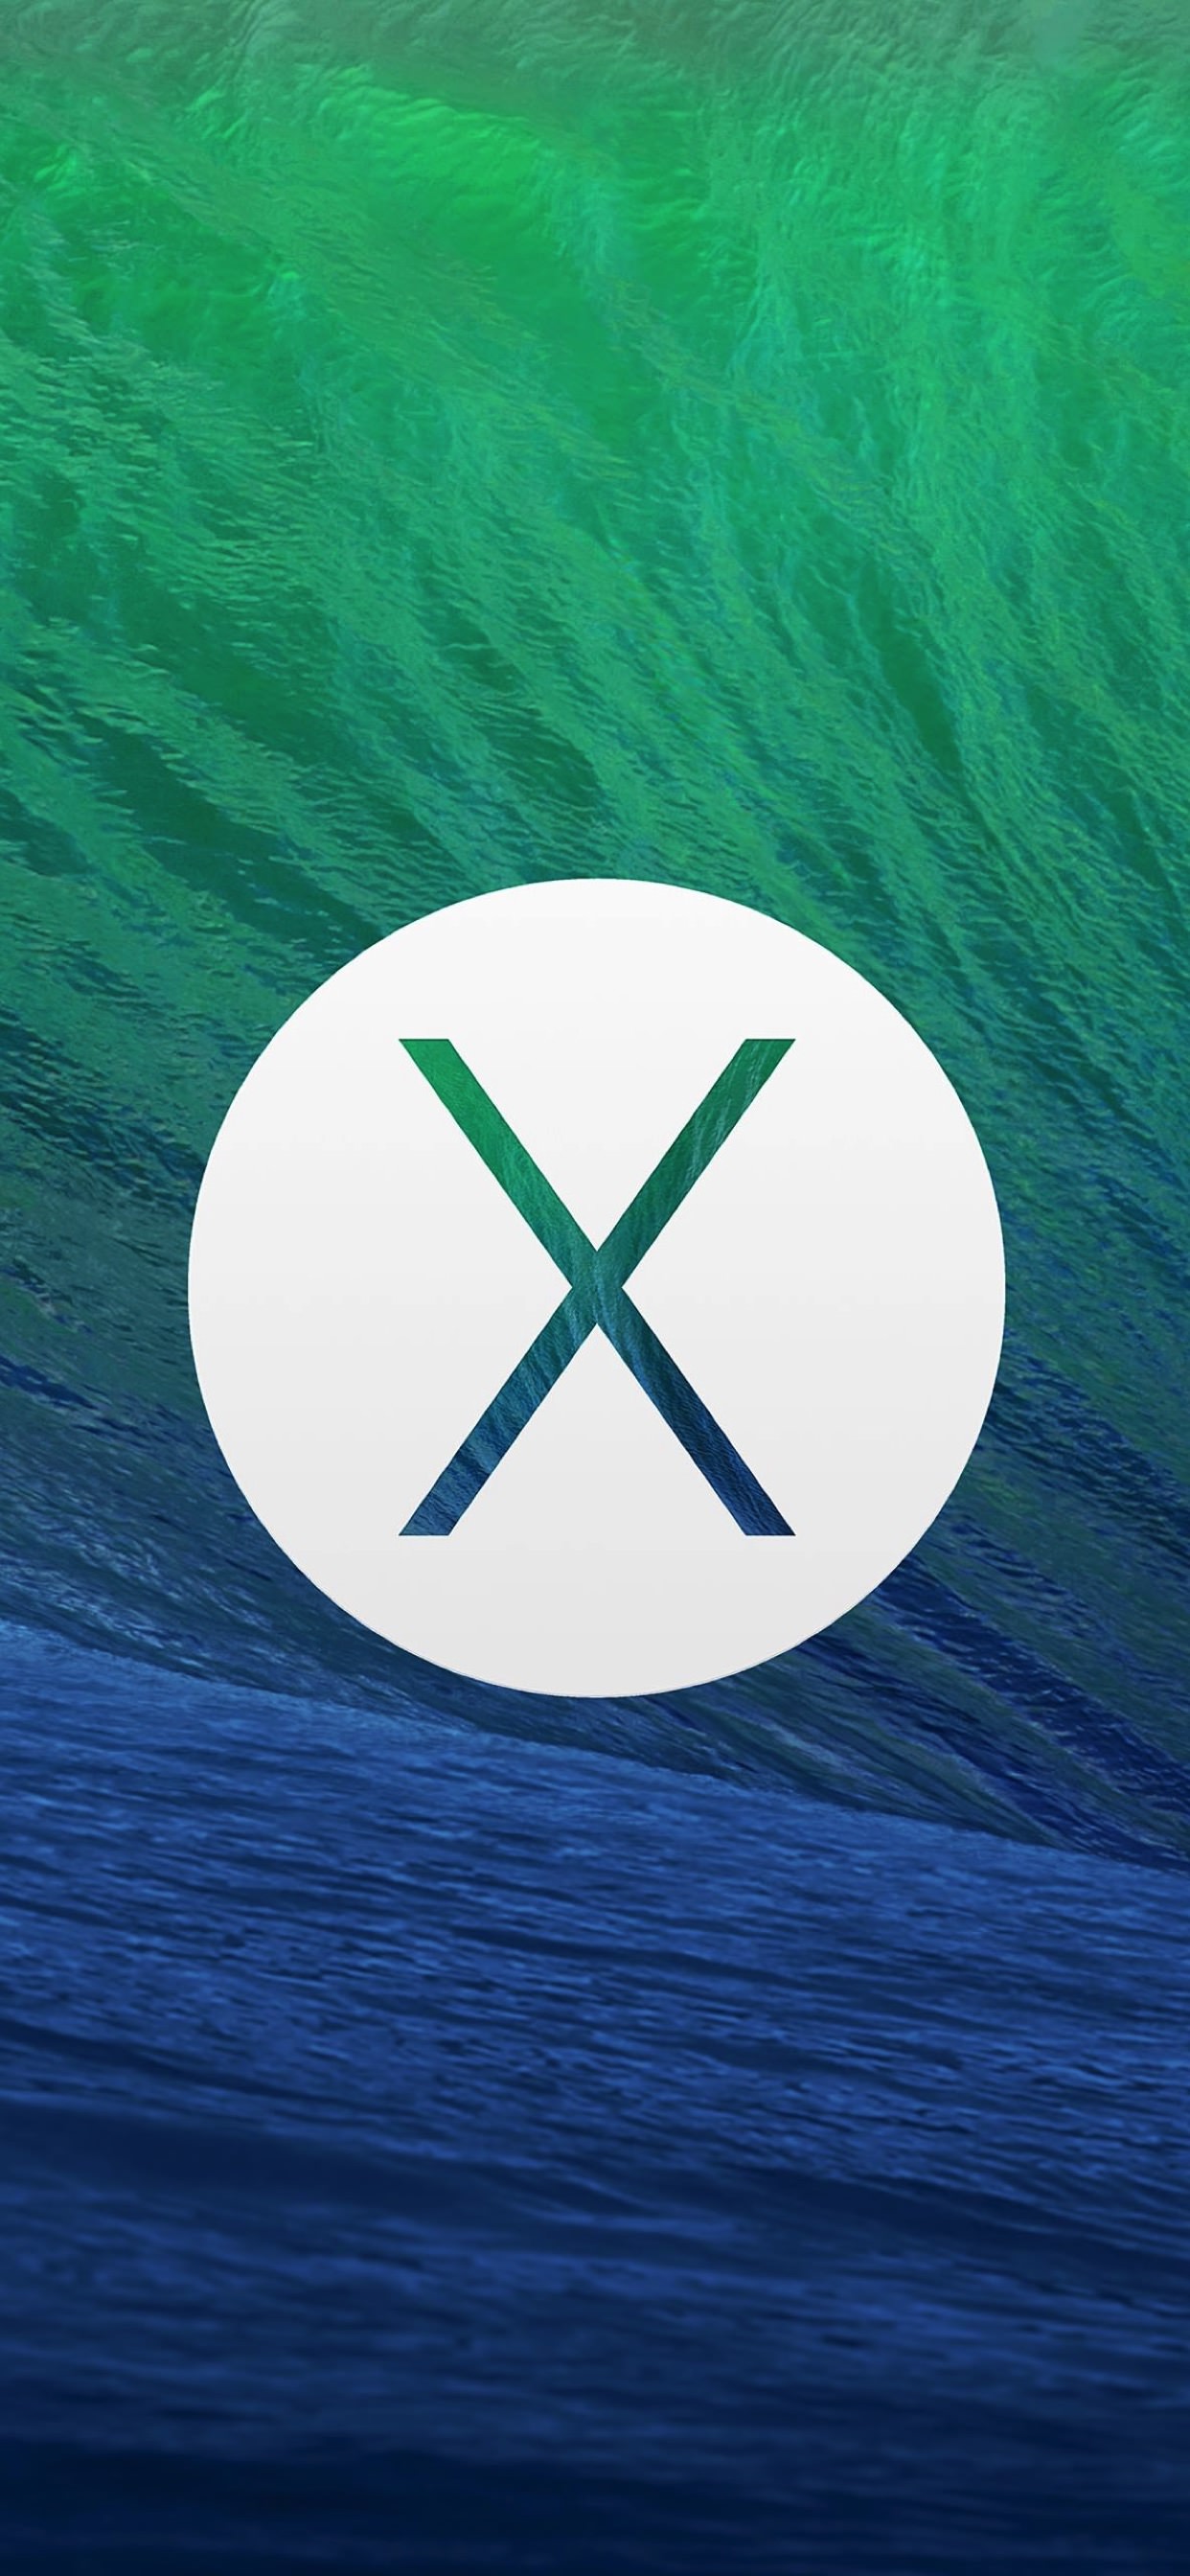 Fondo de pantalla de iPhone XS Max